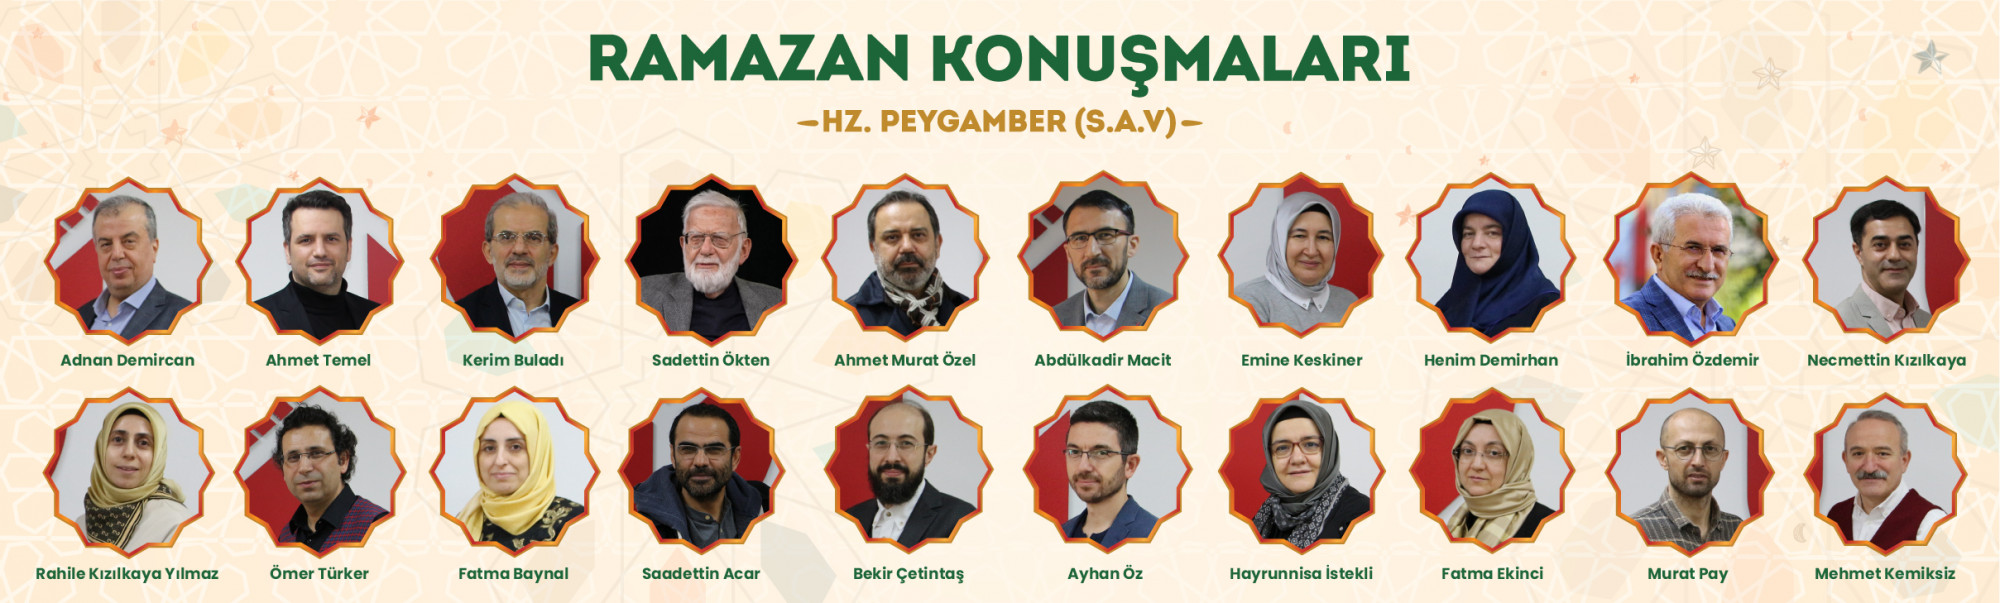 Ramazan Konuşmaları Bu Yıl "Hz. Peygamber" Temasıyla Gerçekleştirildi